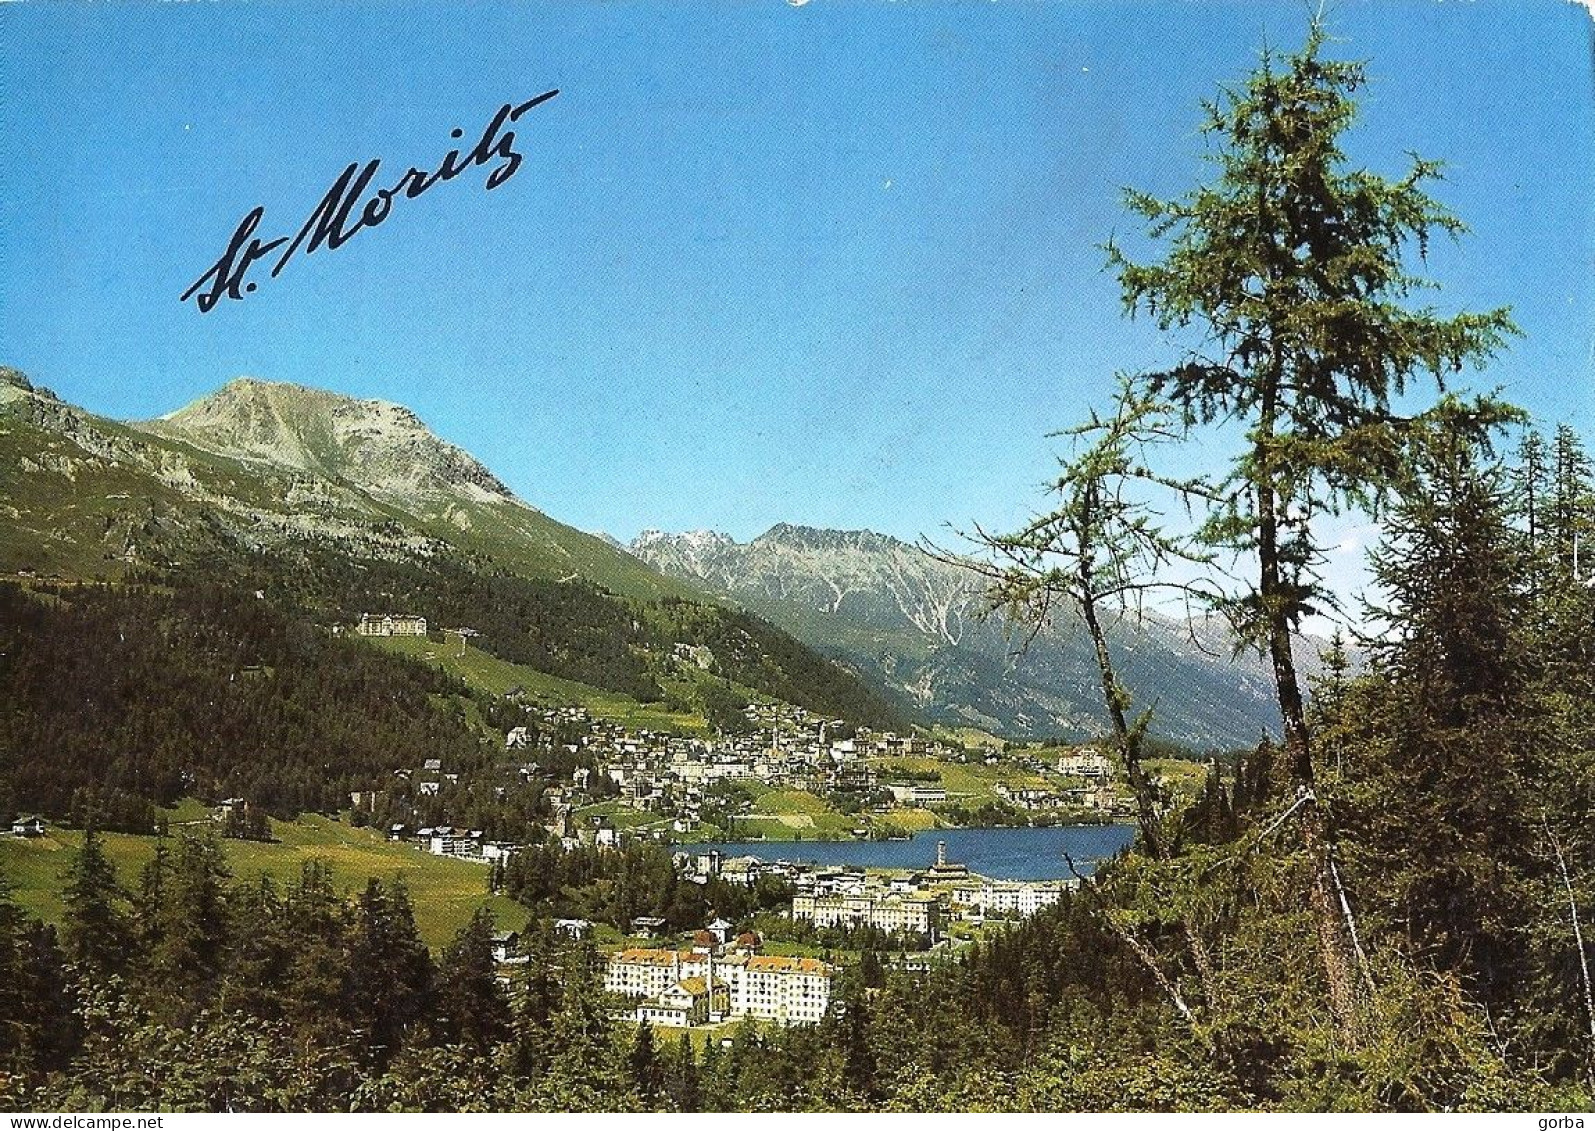 *CPM - SUISSE - GRISONS - St MORITZ - Engadin - St. Moritz